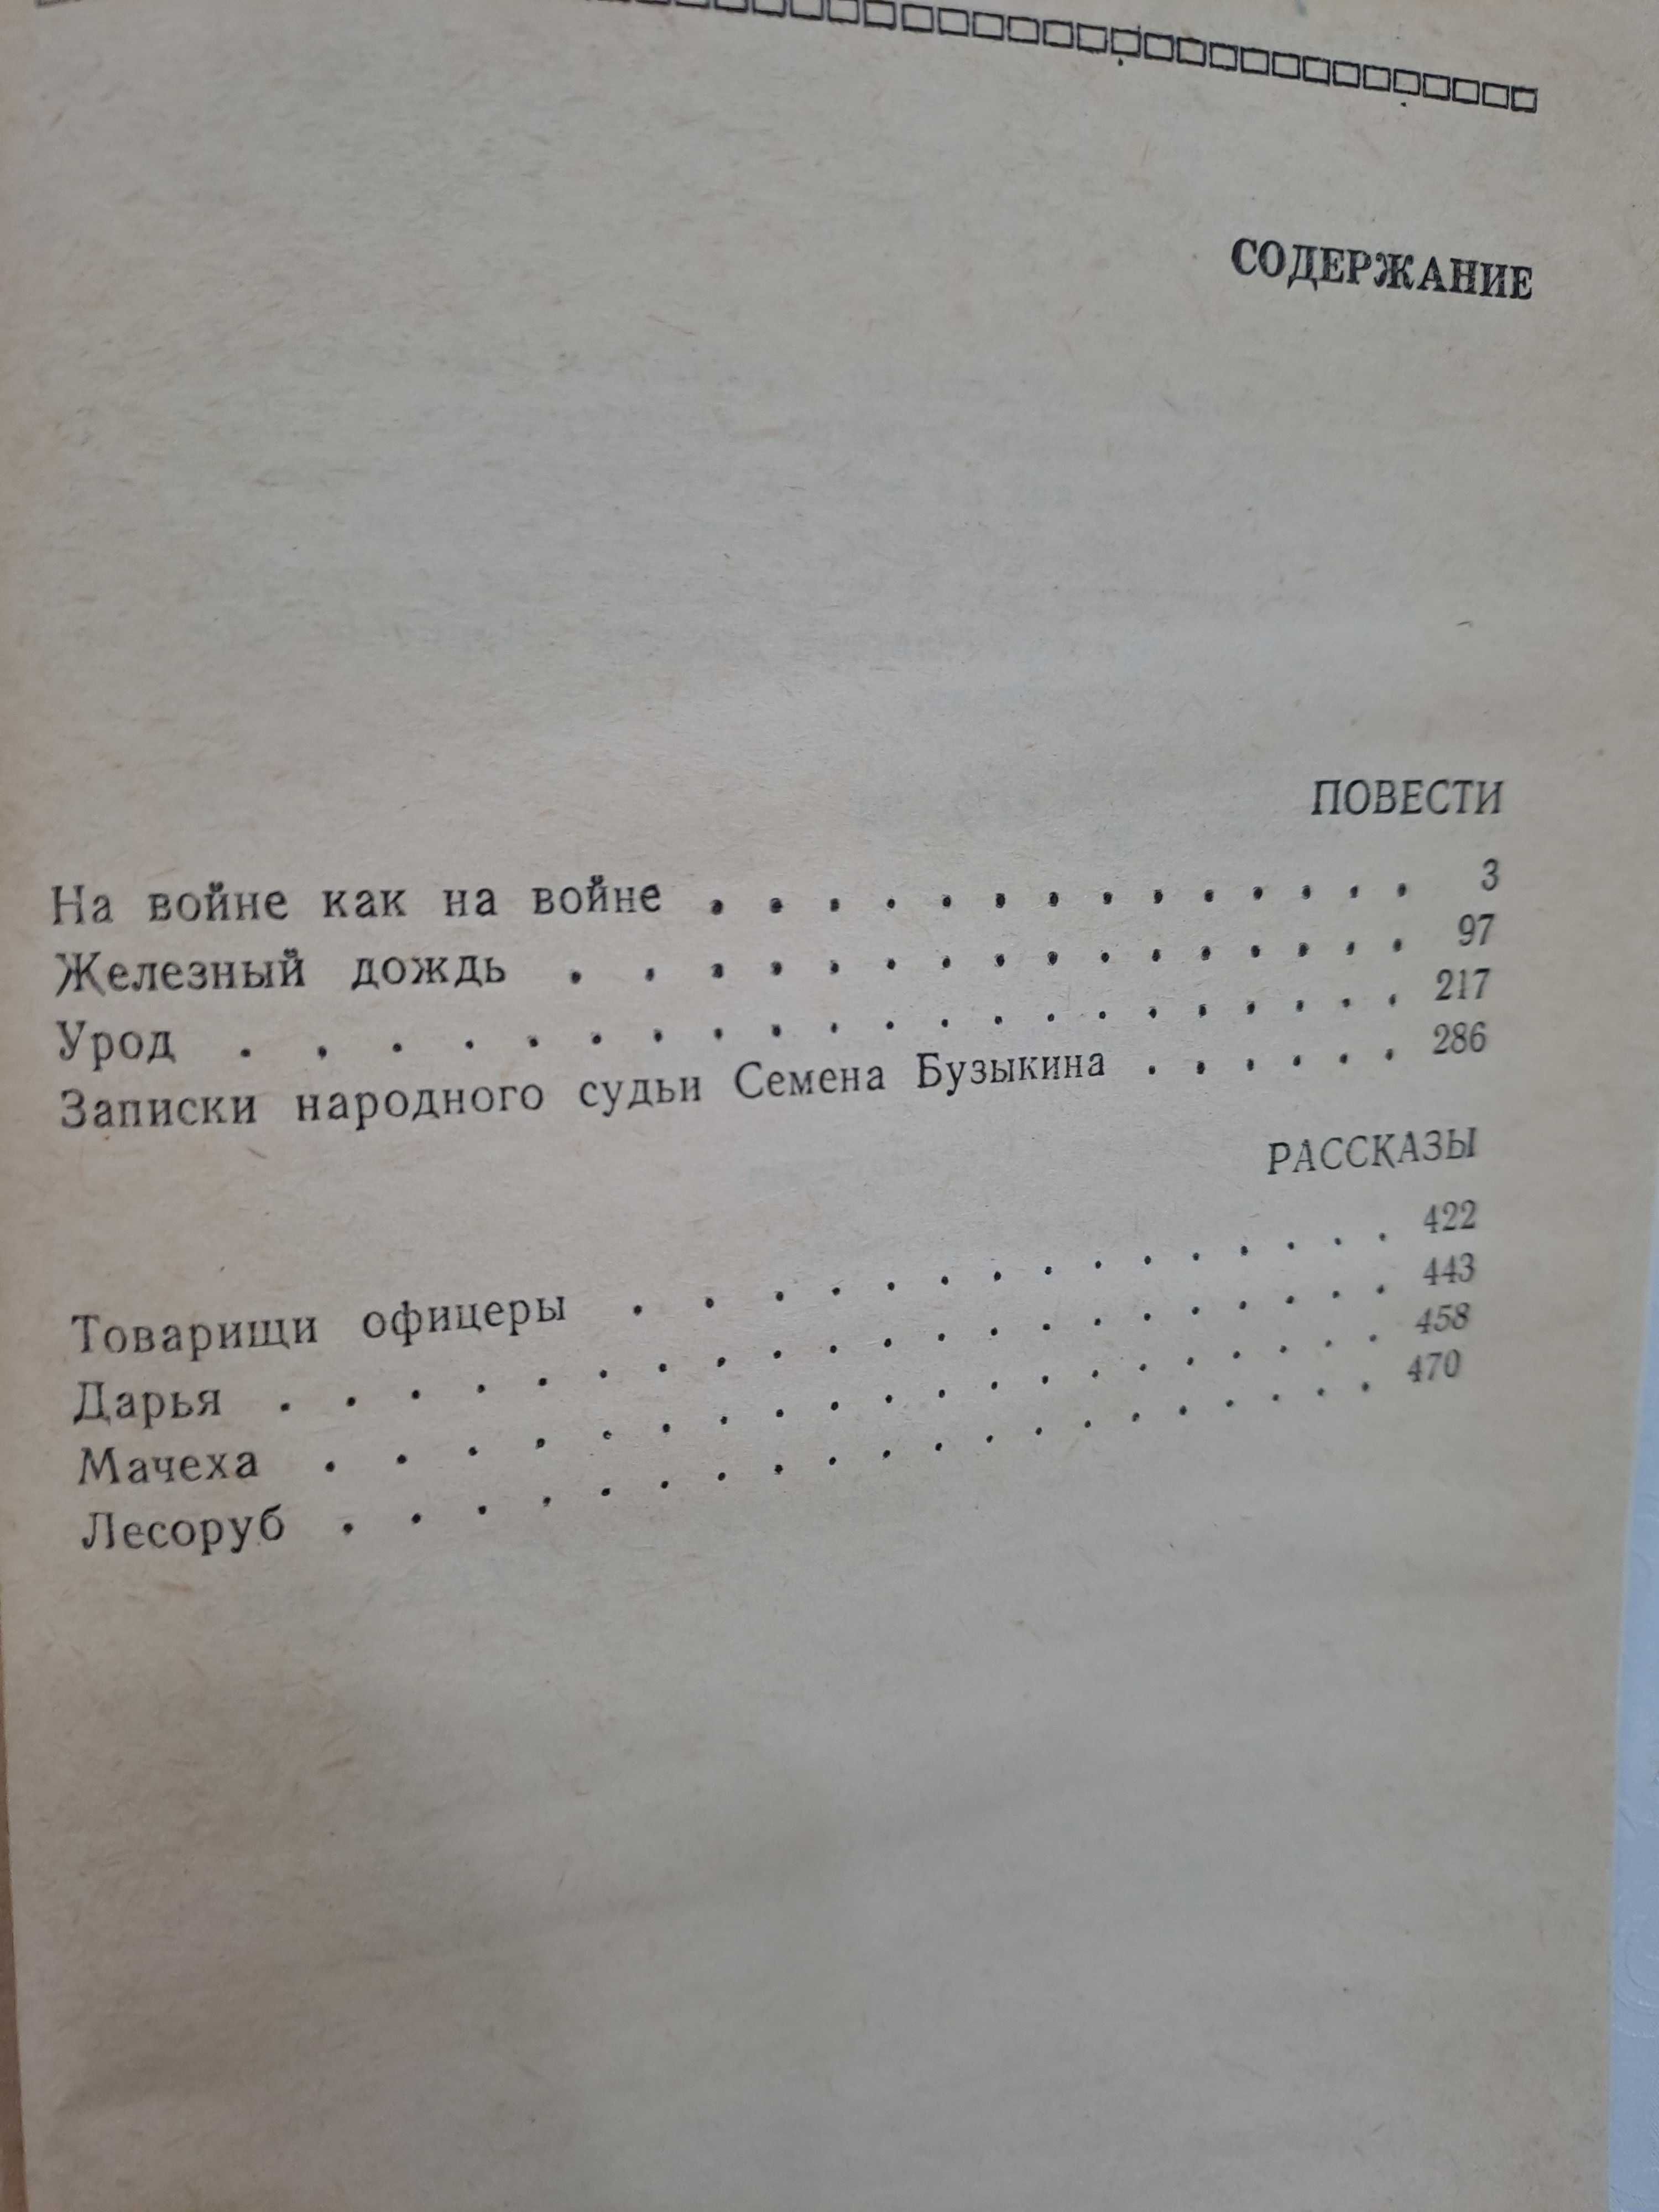 Книги издательство Алматы в основном